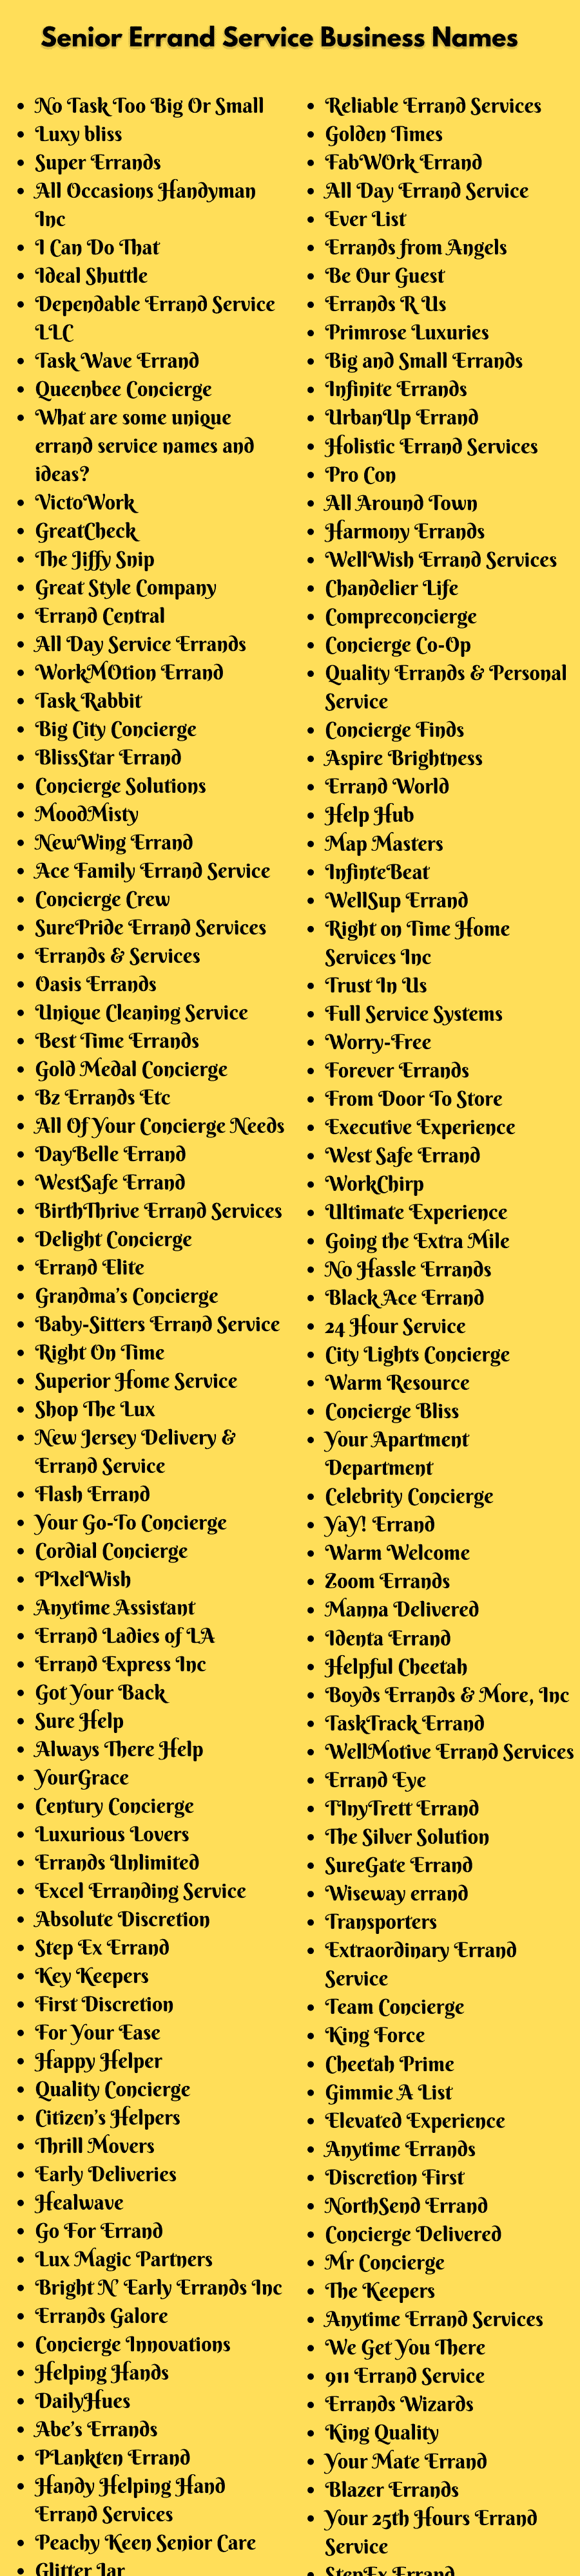 Senior Errand Service Business Names